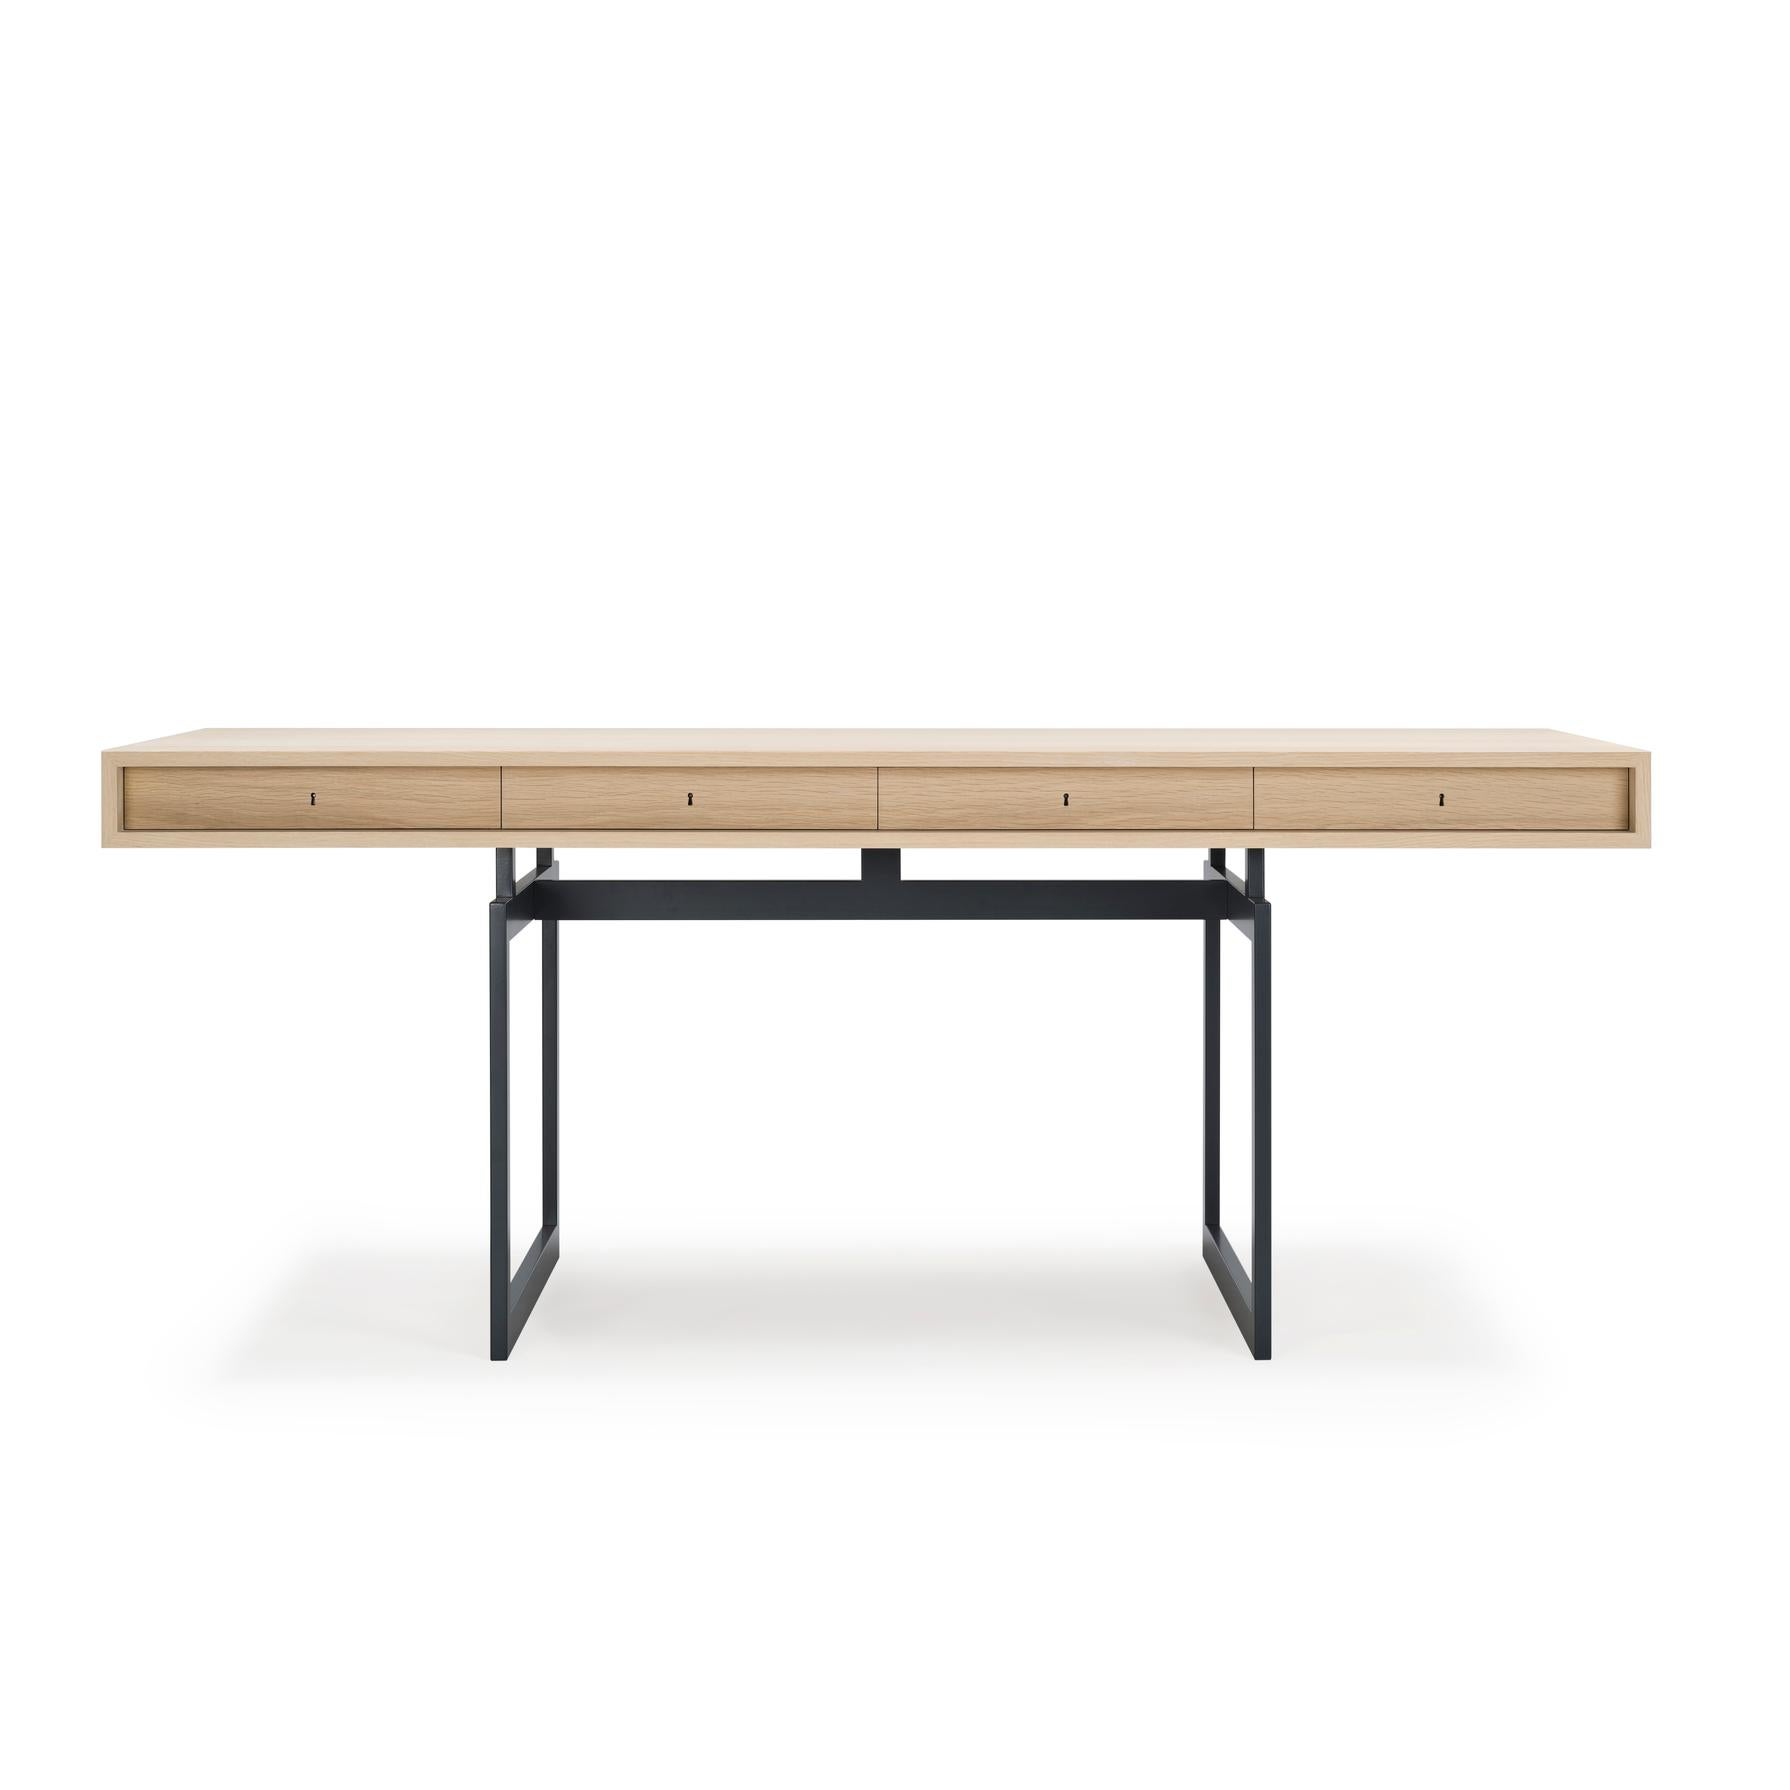 Table conçue par Bodil Kjær en 1959. 

Nous sommes fiers de vous présenter notre première création d'un designer danois. Dans ce cas, l'architecte, professeur et designer danois Bodil Kjær. Ce bureau emblématique, conçu en 1959, était le premier de